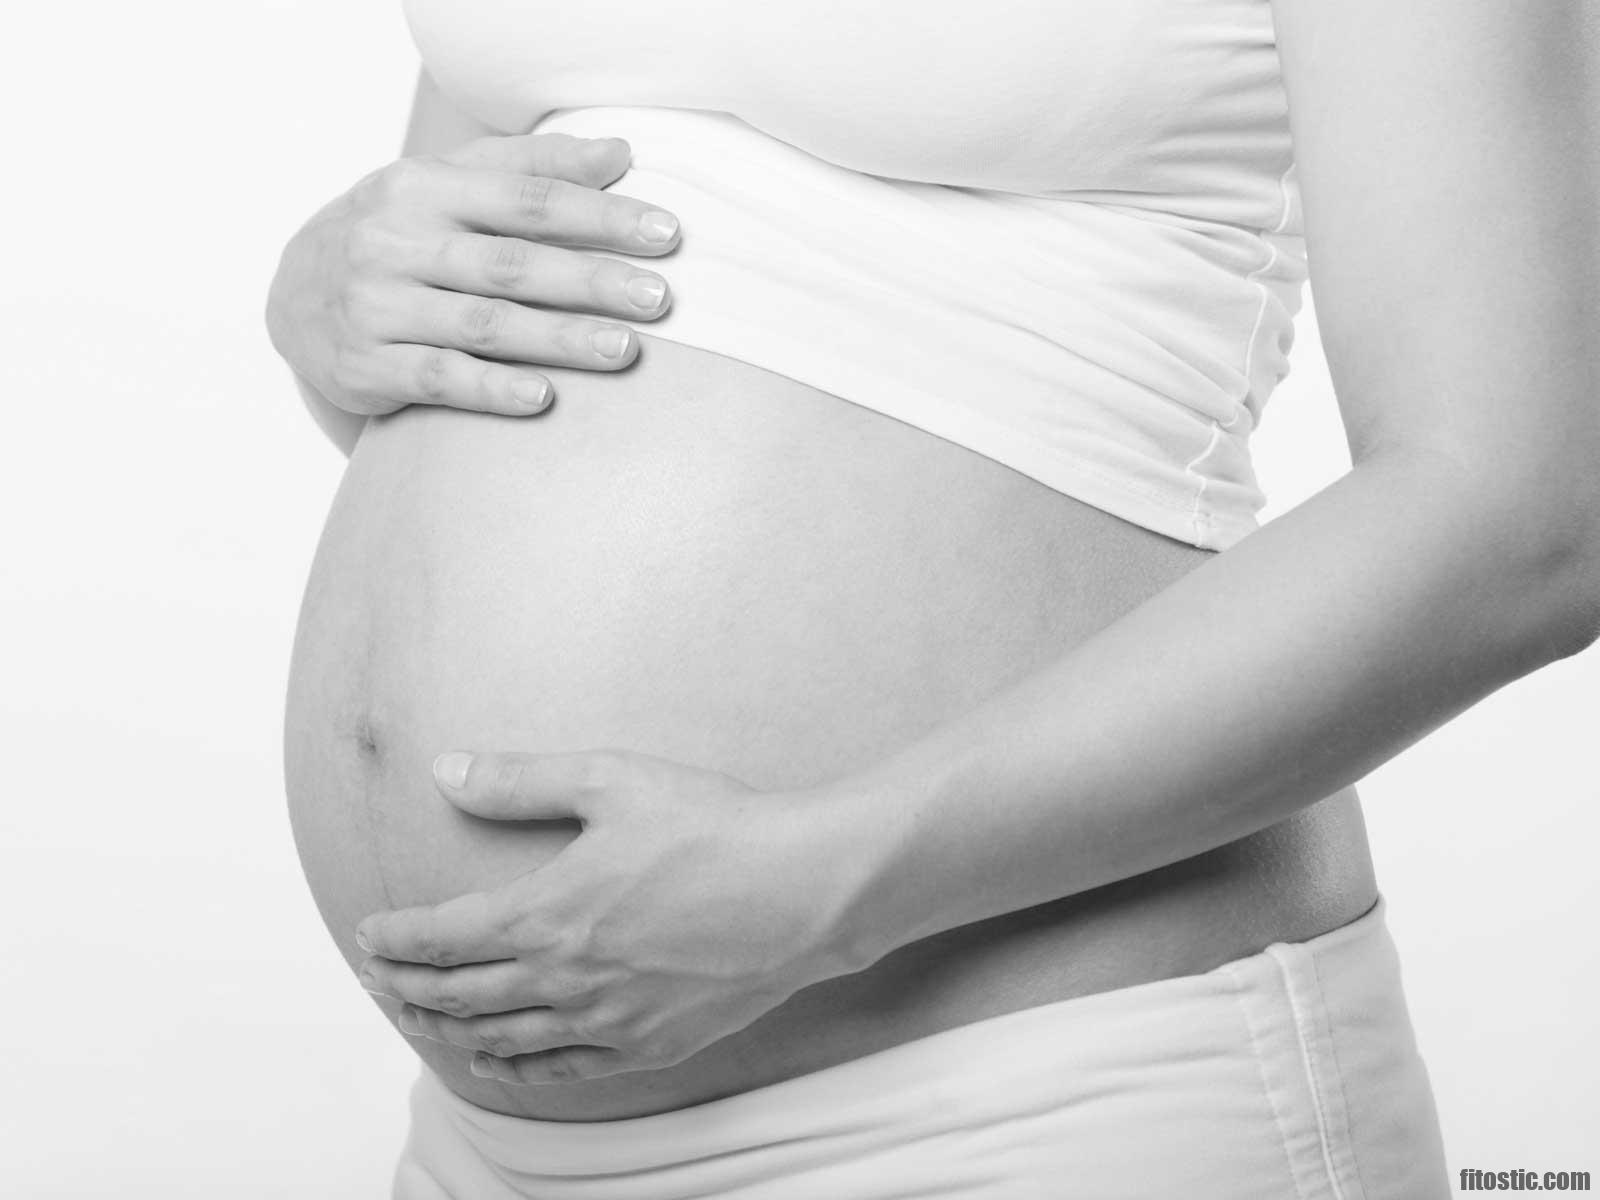 Comment savoir si on est enceinte naturellement ?